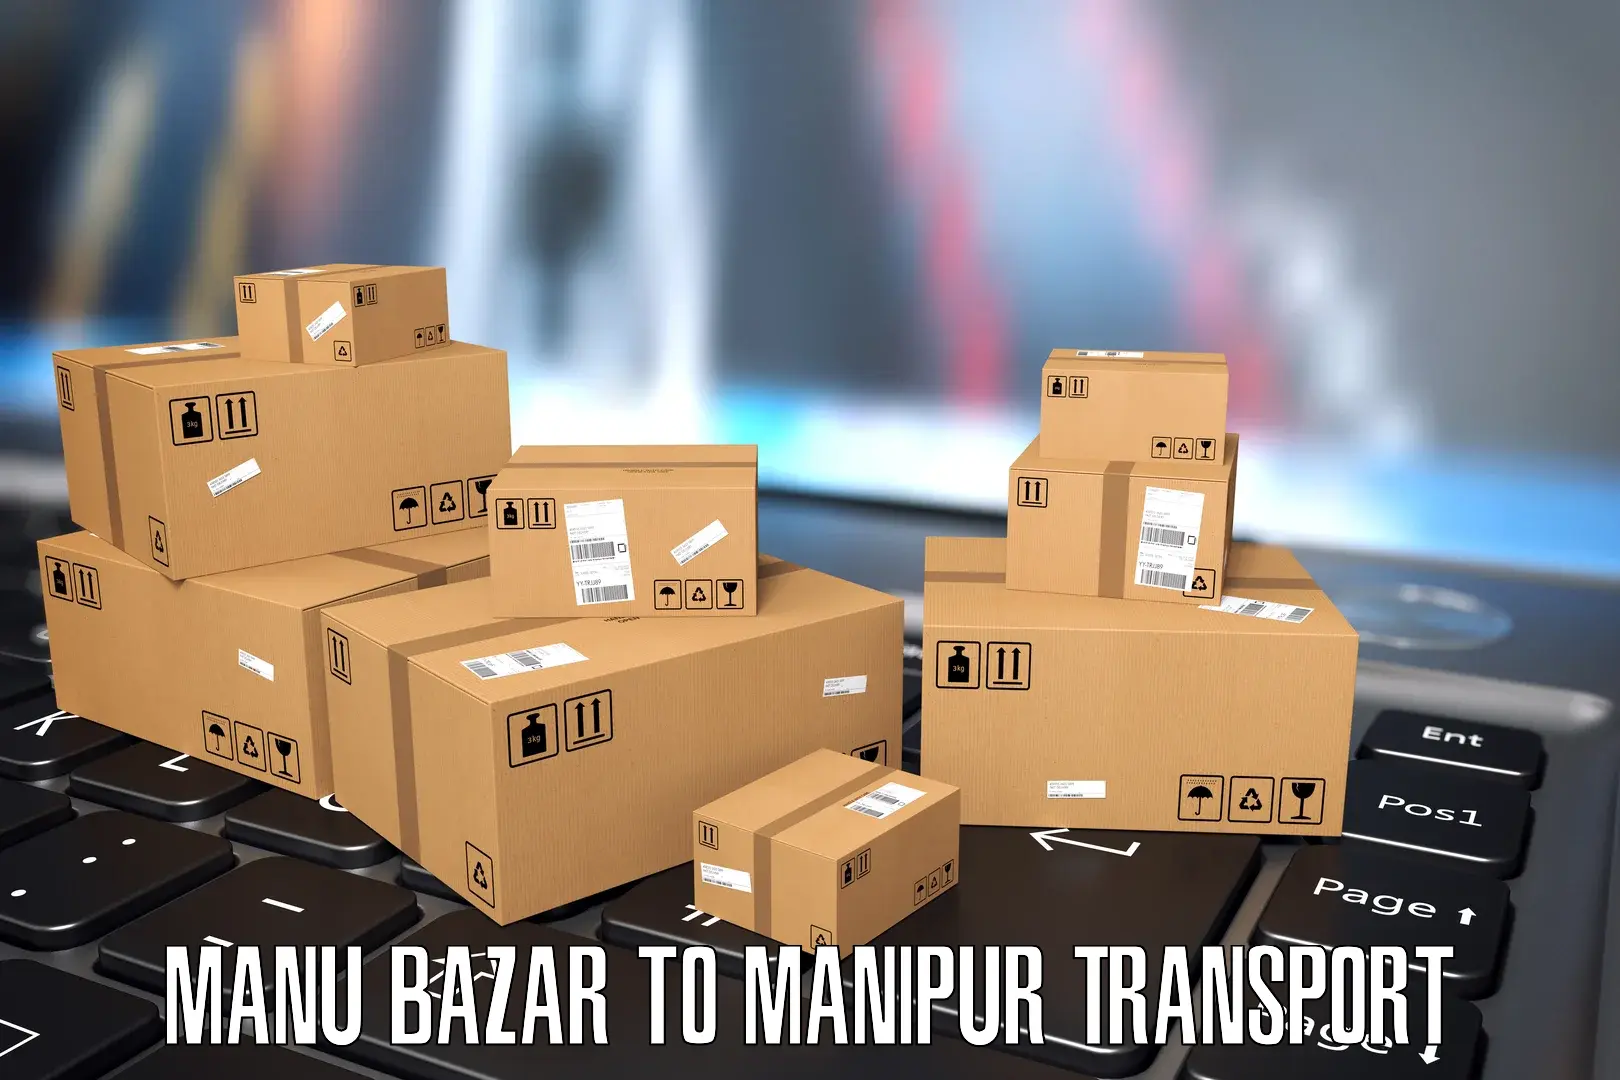 Express transport services Manu Bazar to Chandel